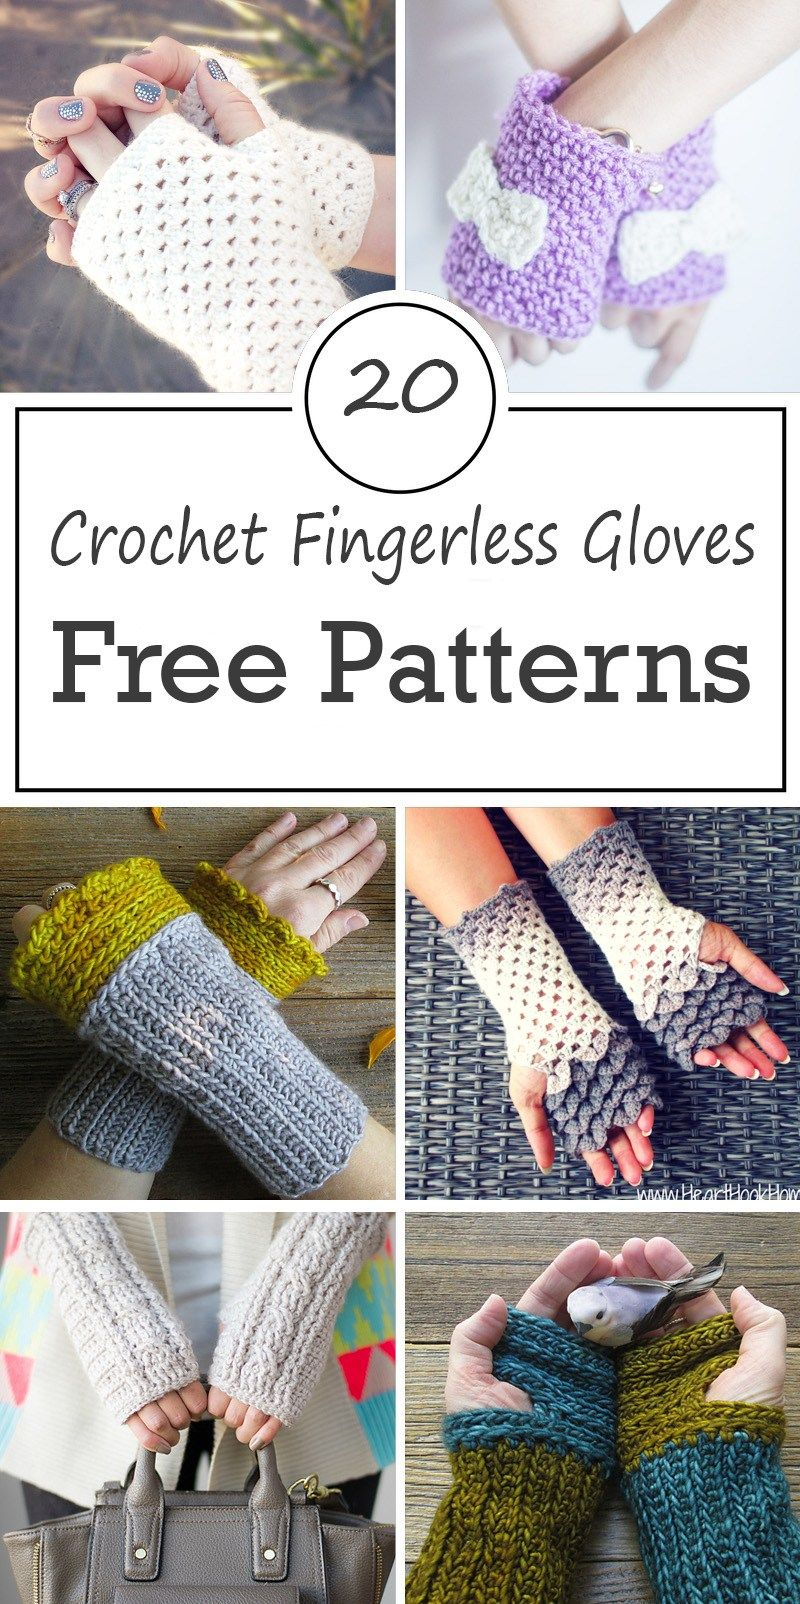 Crochet Wrist Warmers Free Pattern Crochet Fingerless Gloves Free Patterns Crochet Crochet